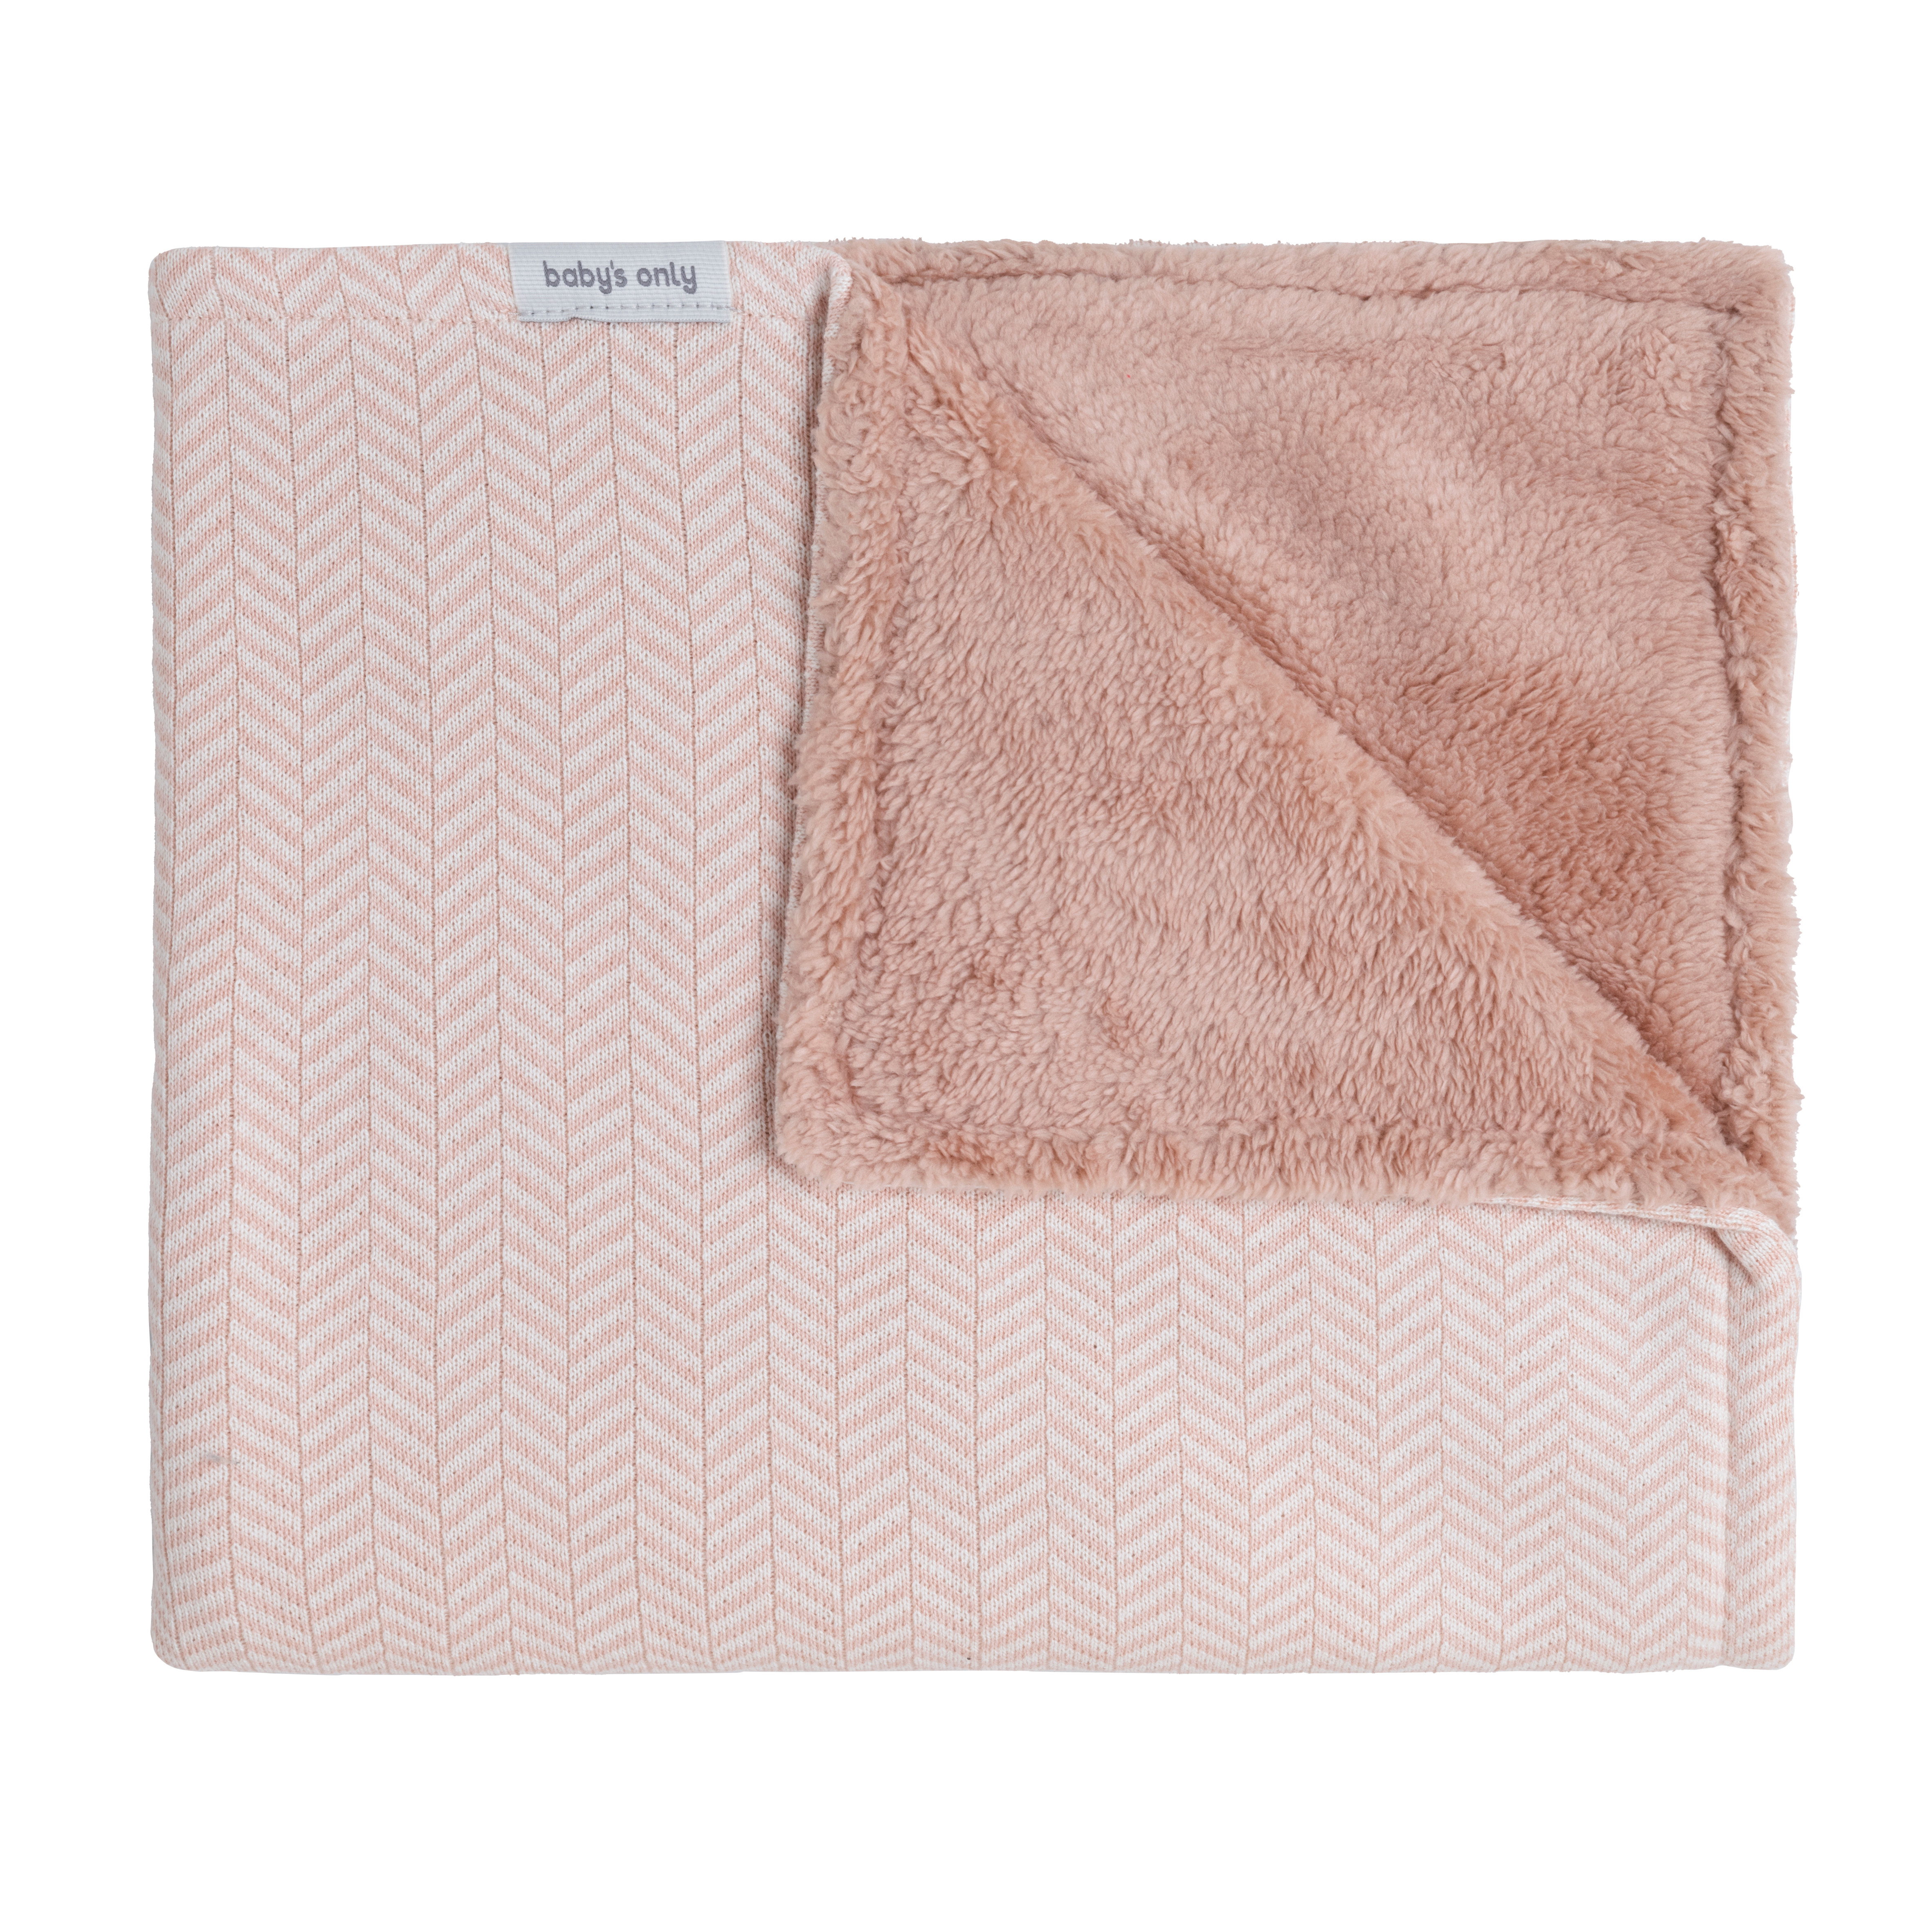 Cot blanket teddy Dawn blush/ecru